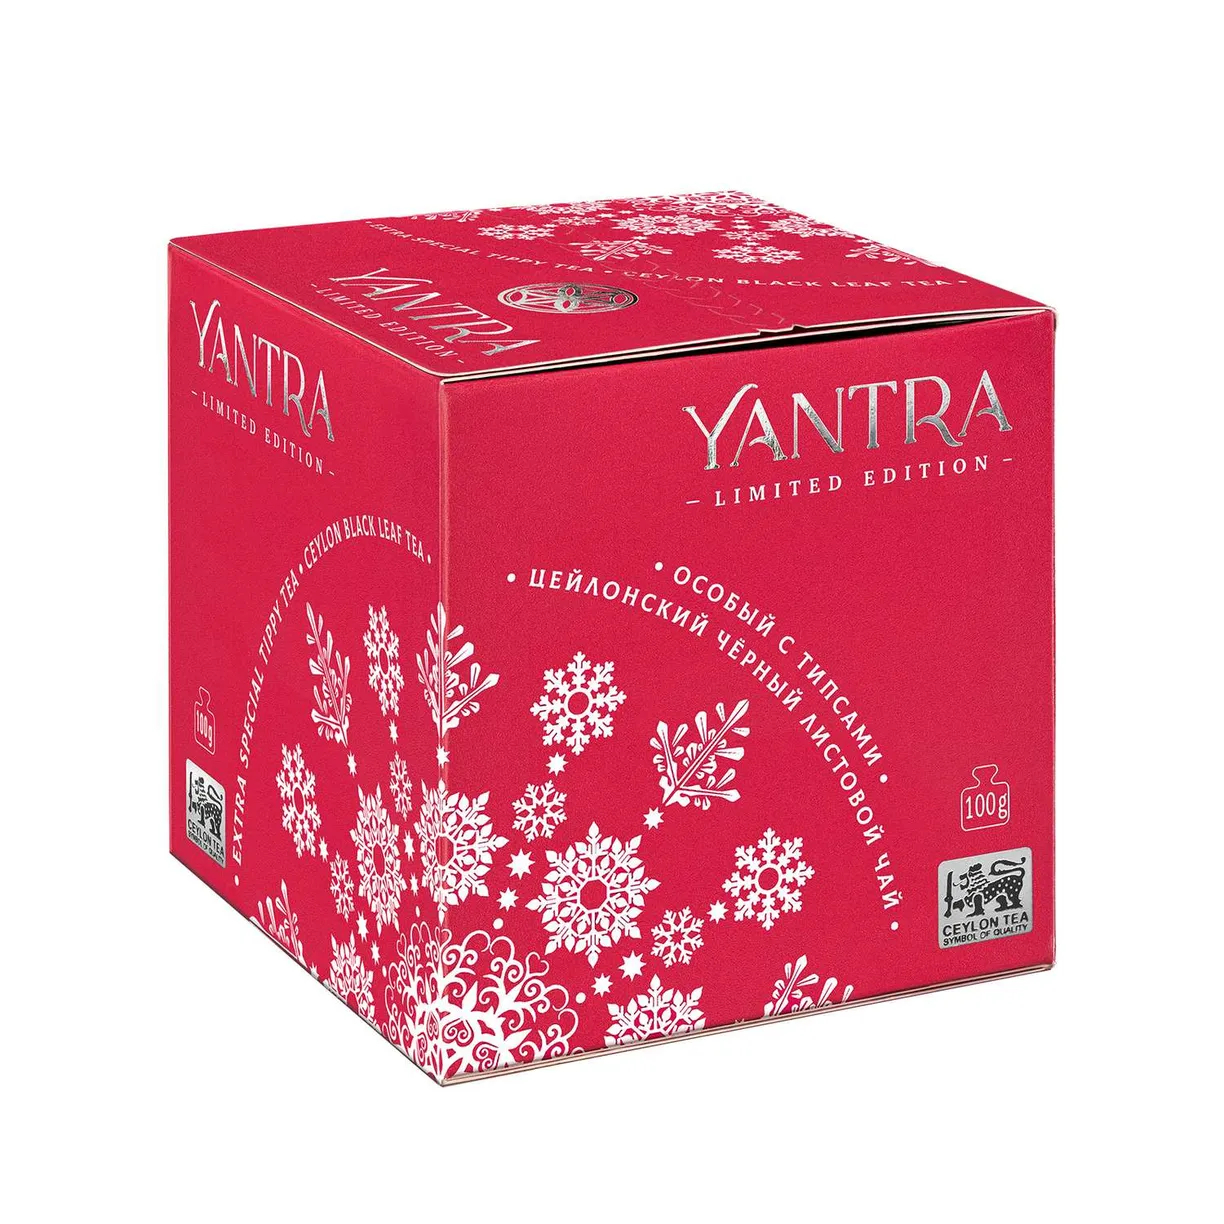 Чай черный Yantra листовой с типсами 100 г чай чёрный листовой с типсами yantra extra special tippy tea 100 г